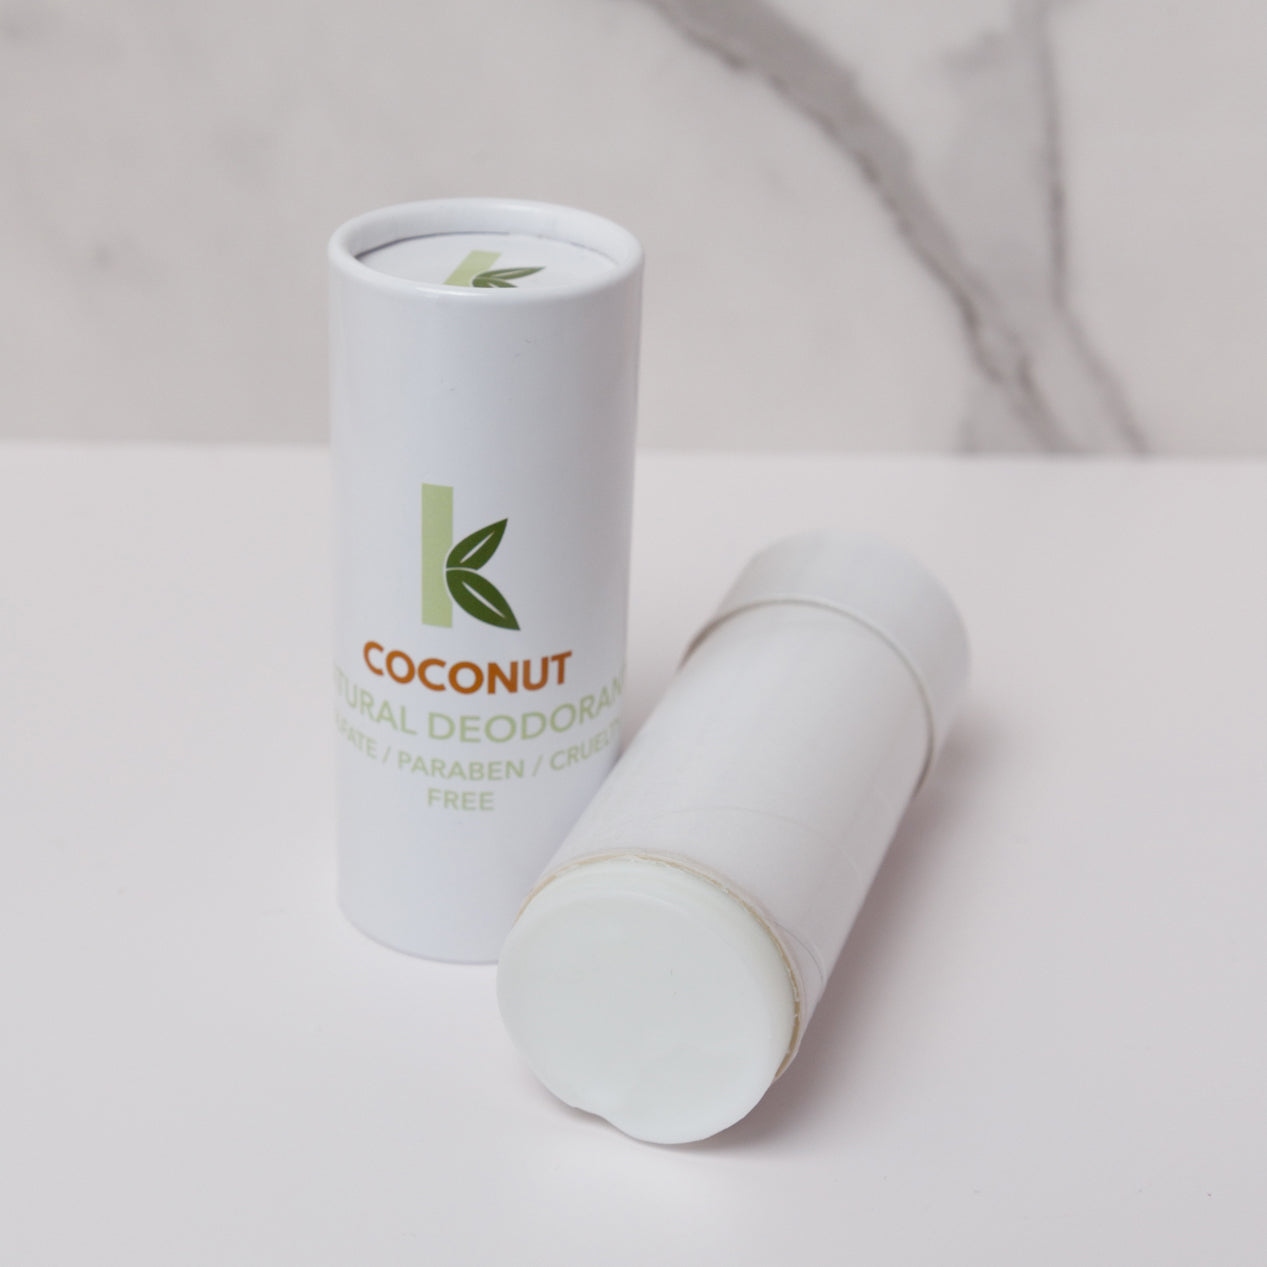 Natural coconut deodorant